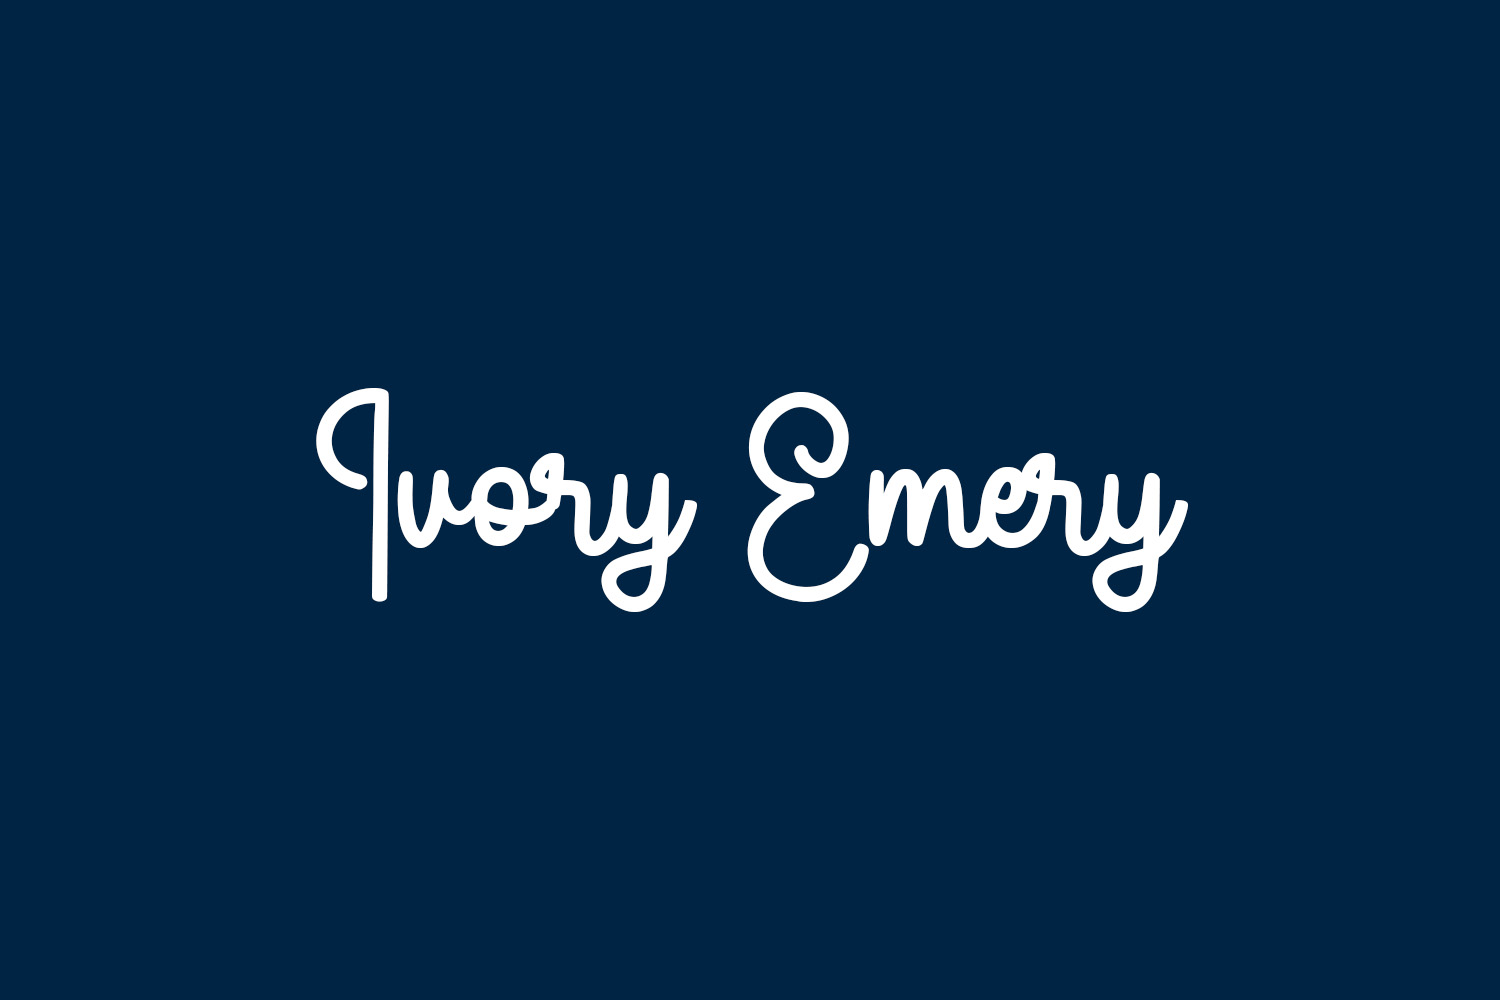 Ivory Emery Free Font